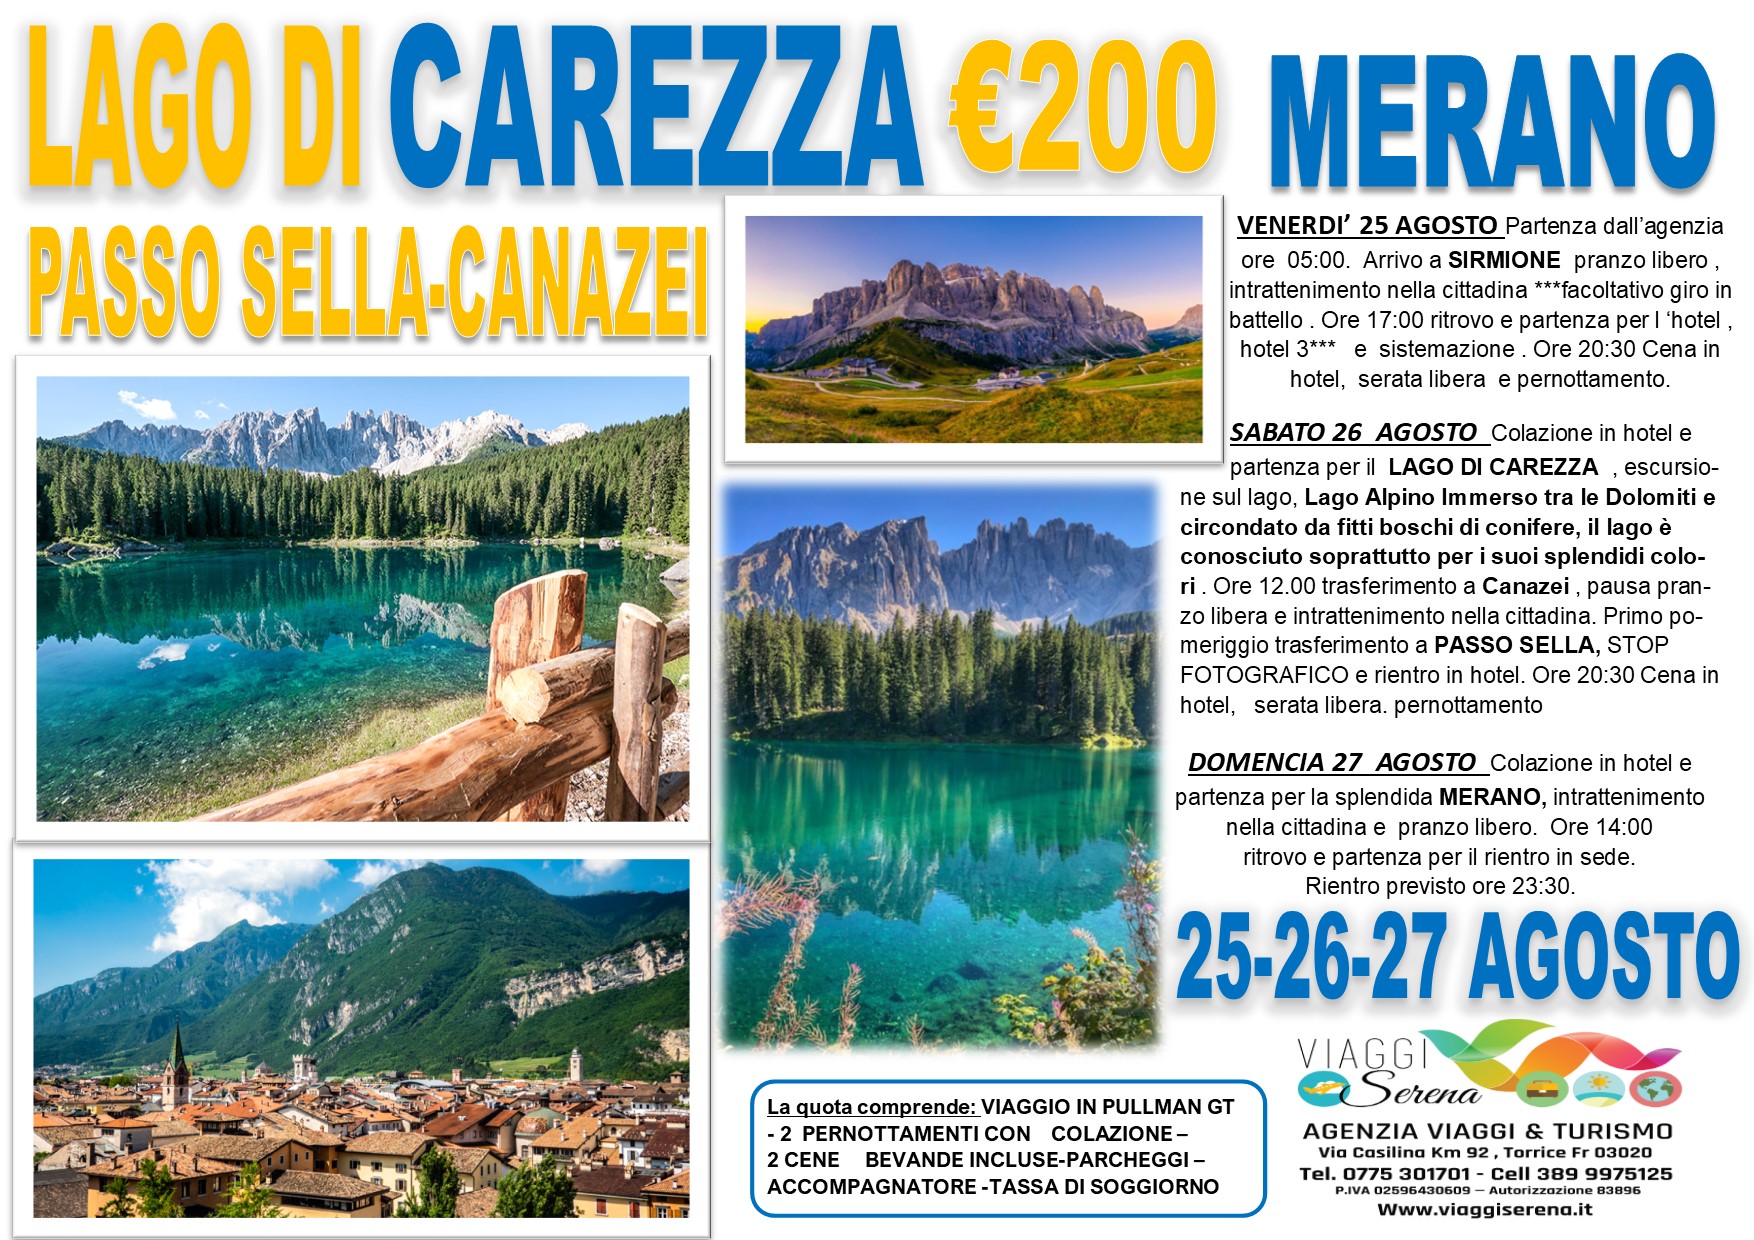 Viaggi di Gruppo: Lago di Carezza, Passo Sella, Canazei & Merano 25-26-27 Agosto  €200,00